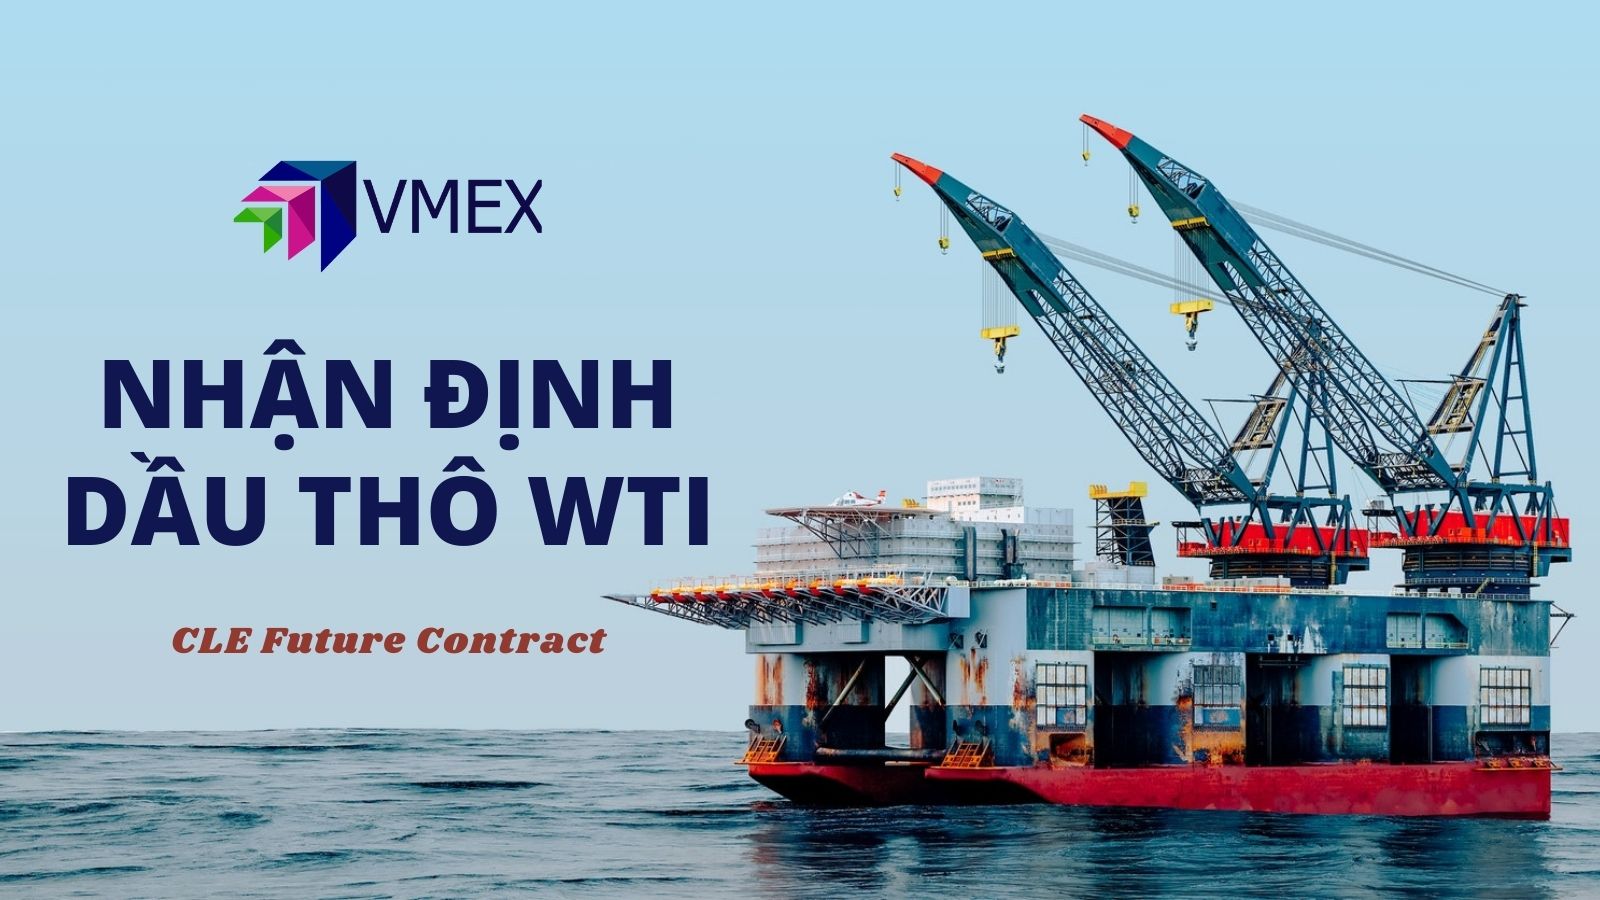 Nhận định Dầu thô WTI ngày 21/12/2021 | VMEX